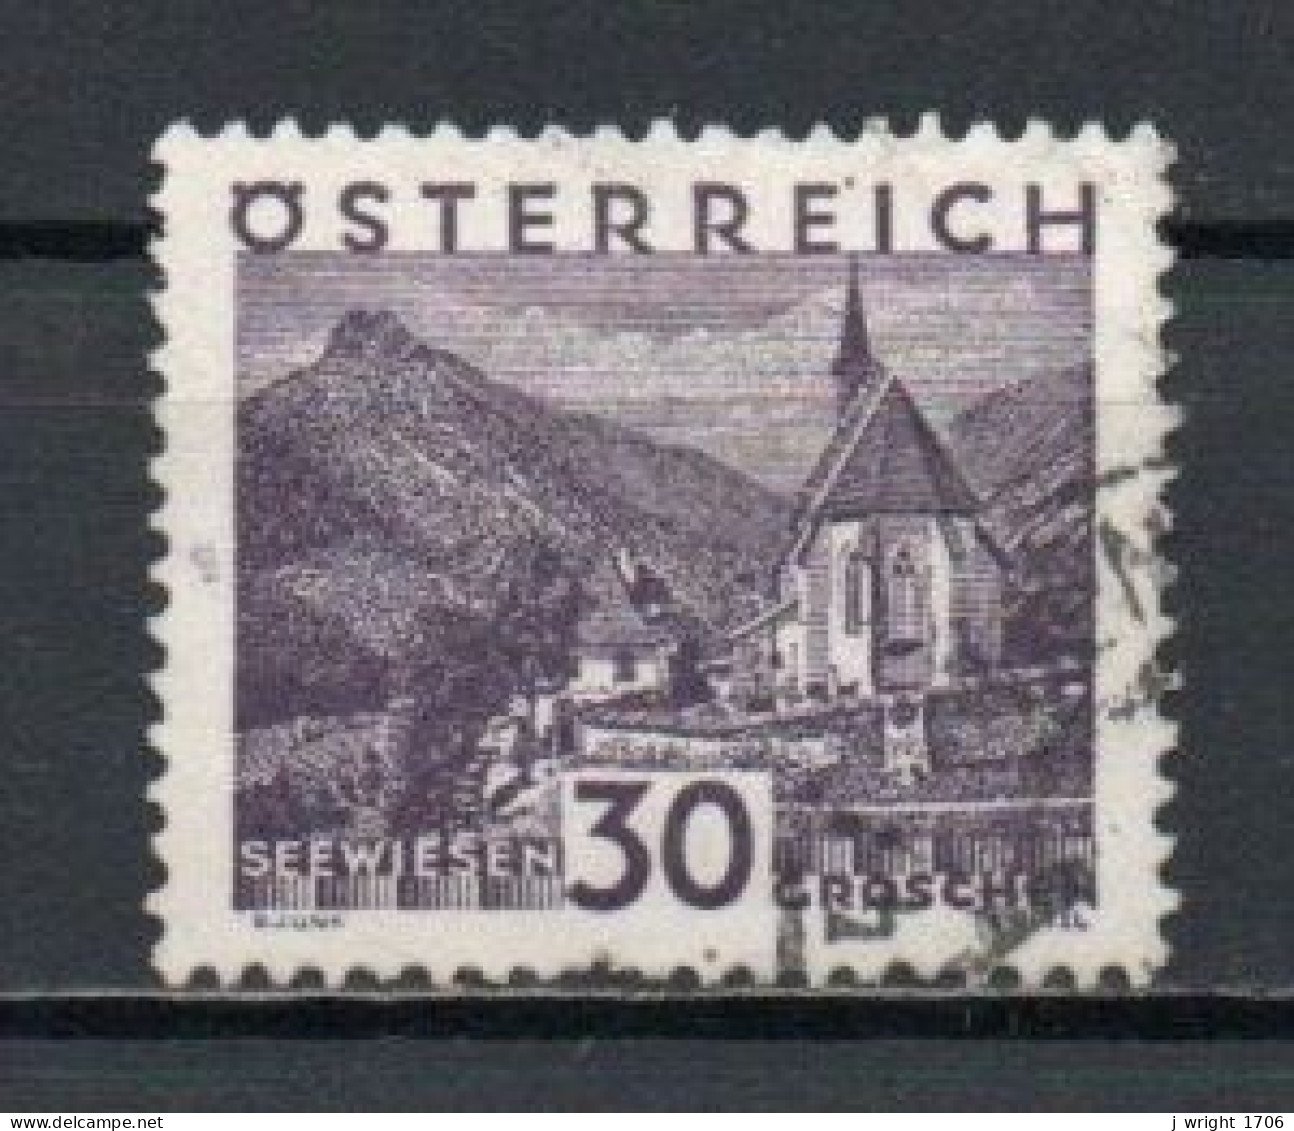 Austria, 1929, Landscapes Large Format/Seewiesen, 30g, USED - Oblitérés